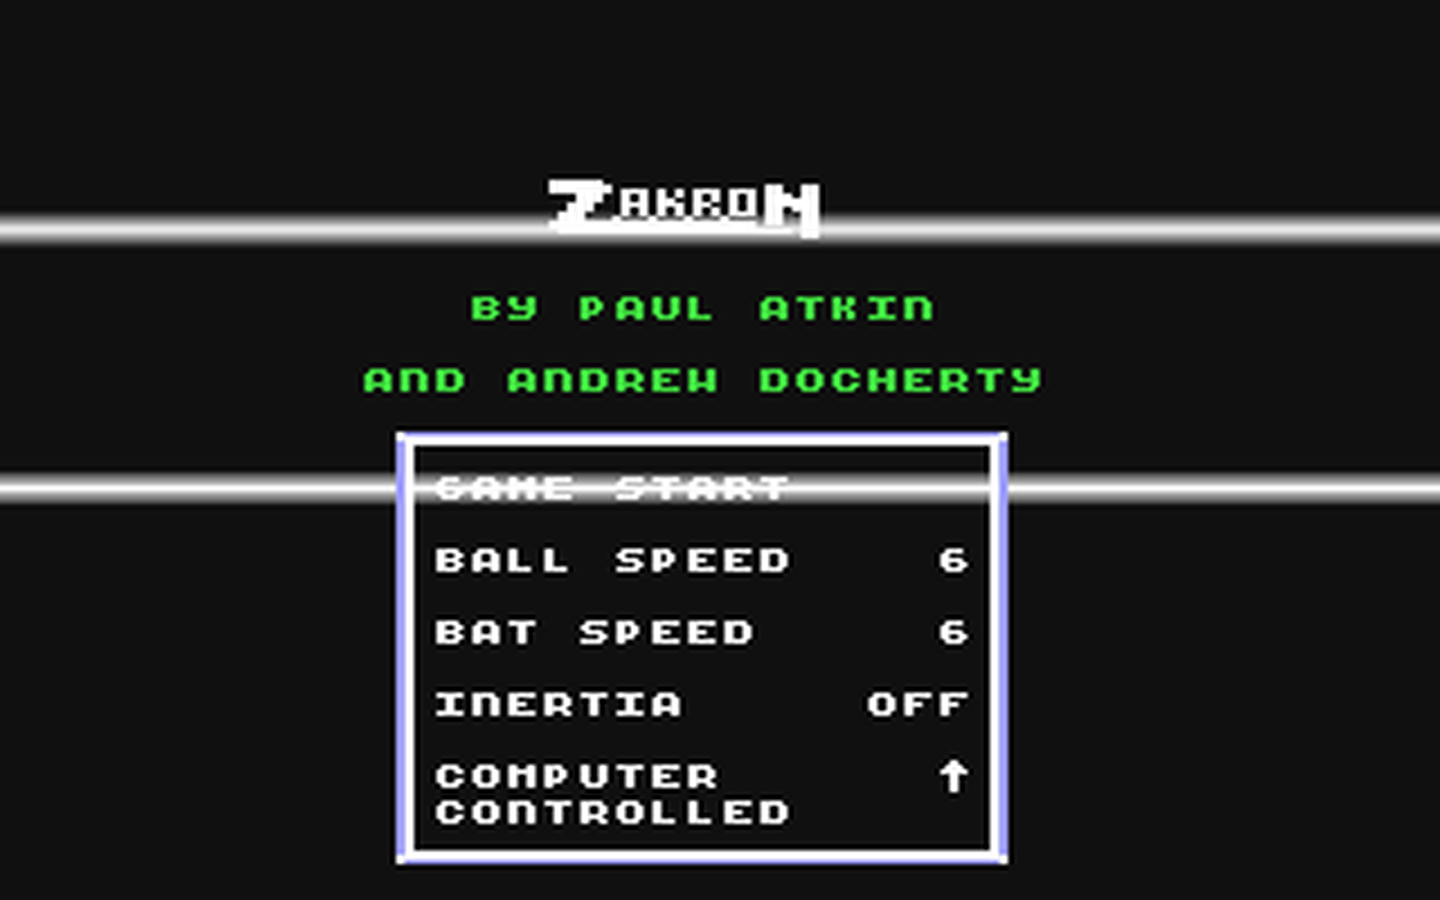 C64 GameBase Zakron Commodore_Disk_User/Alphavite_Publications_Ltd. 1991